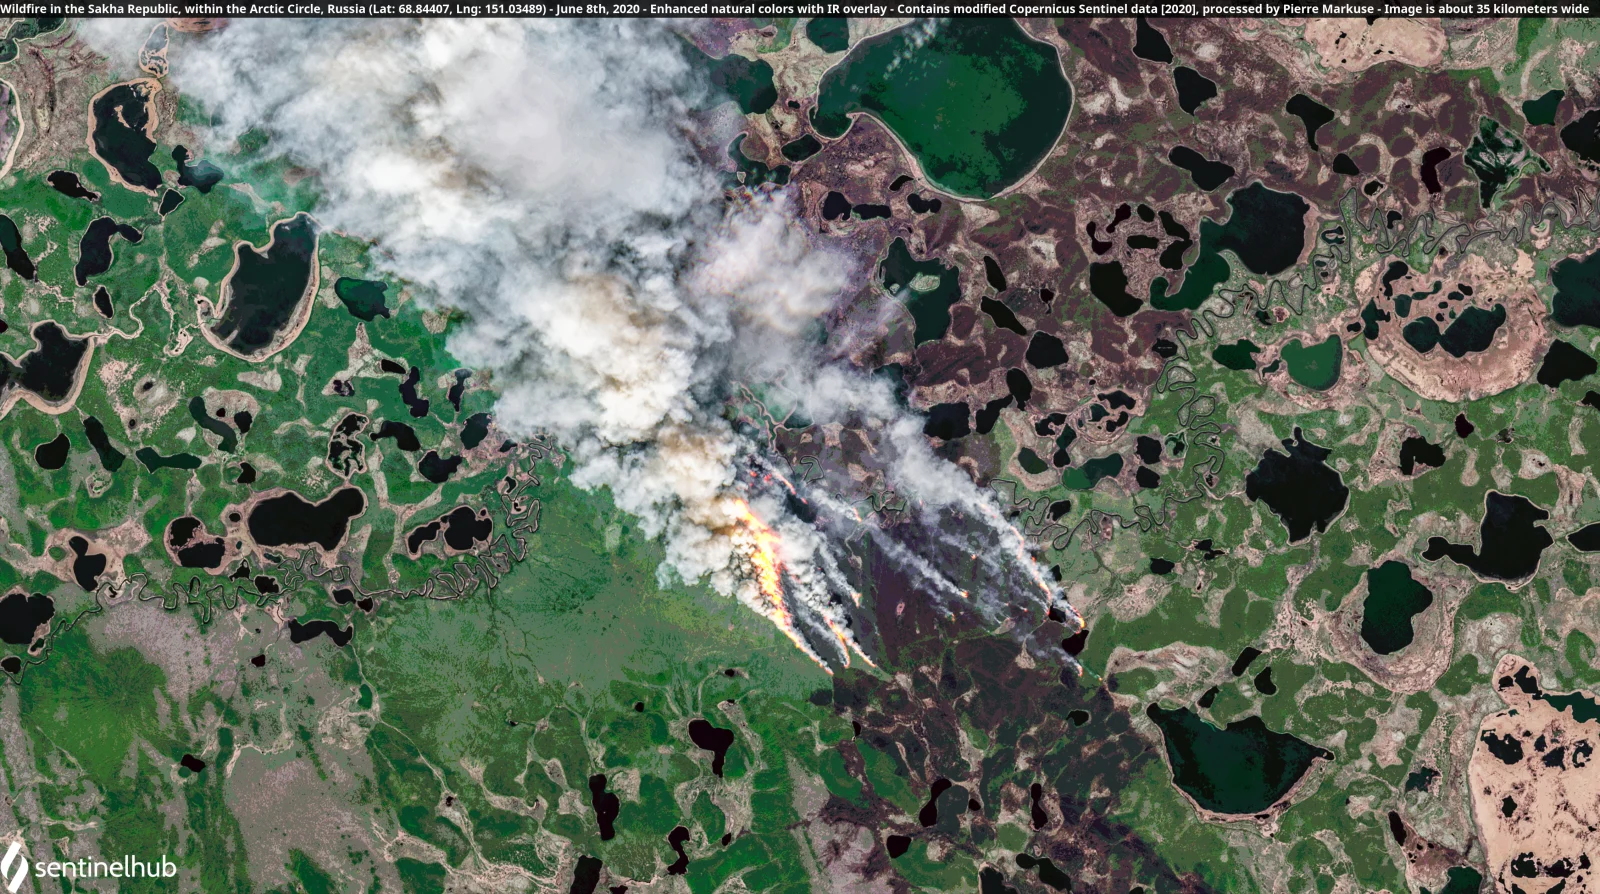 Пожежа в Якутії, за полярним колом, 8 червня: фото Європейського космічного агентства